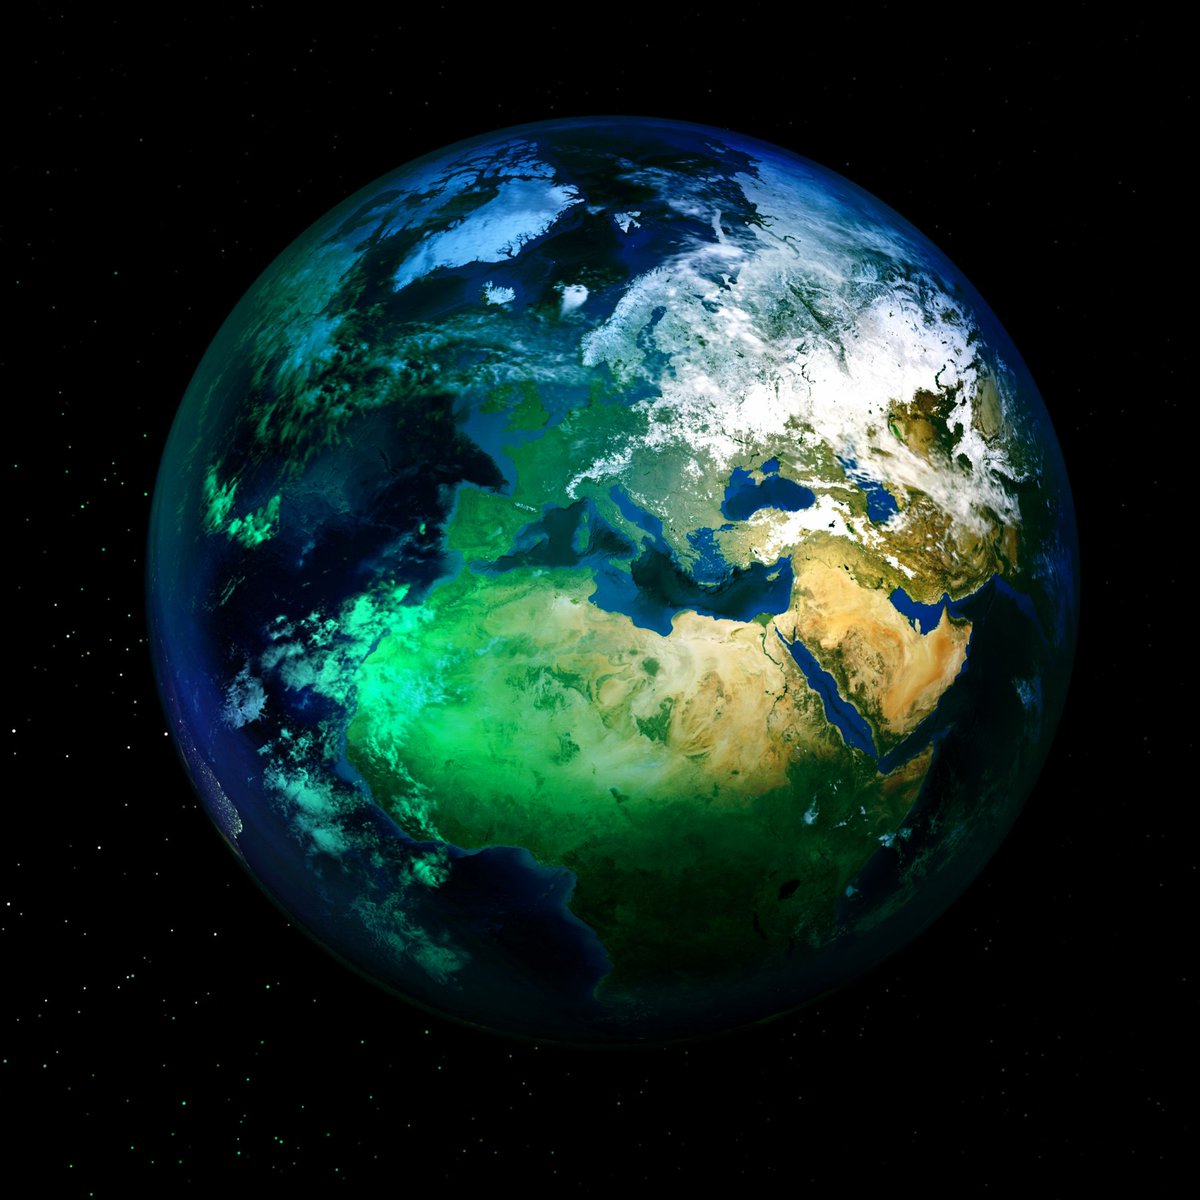 モトケン Oorer F 美しい地球に癒される Photo By Piro4d 地球 光 太陽 宇宙空間 輝き なんでこんなにきれいなんだ ずっと見てられる ずっと見てる きれいでしょ 今を生きる 幸せの瞬間 感謝 頑張る 素敵 癒される フォロー